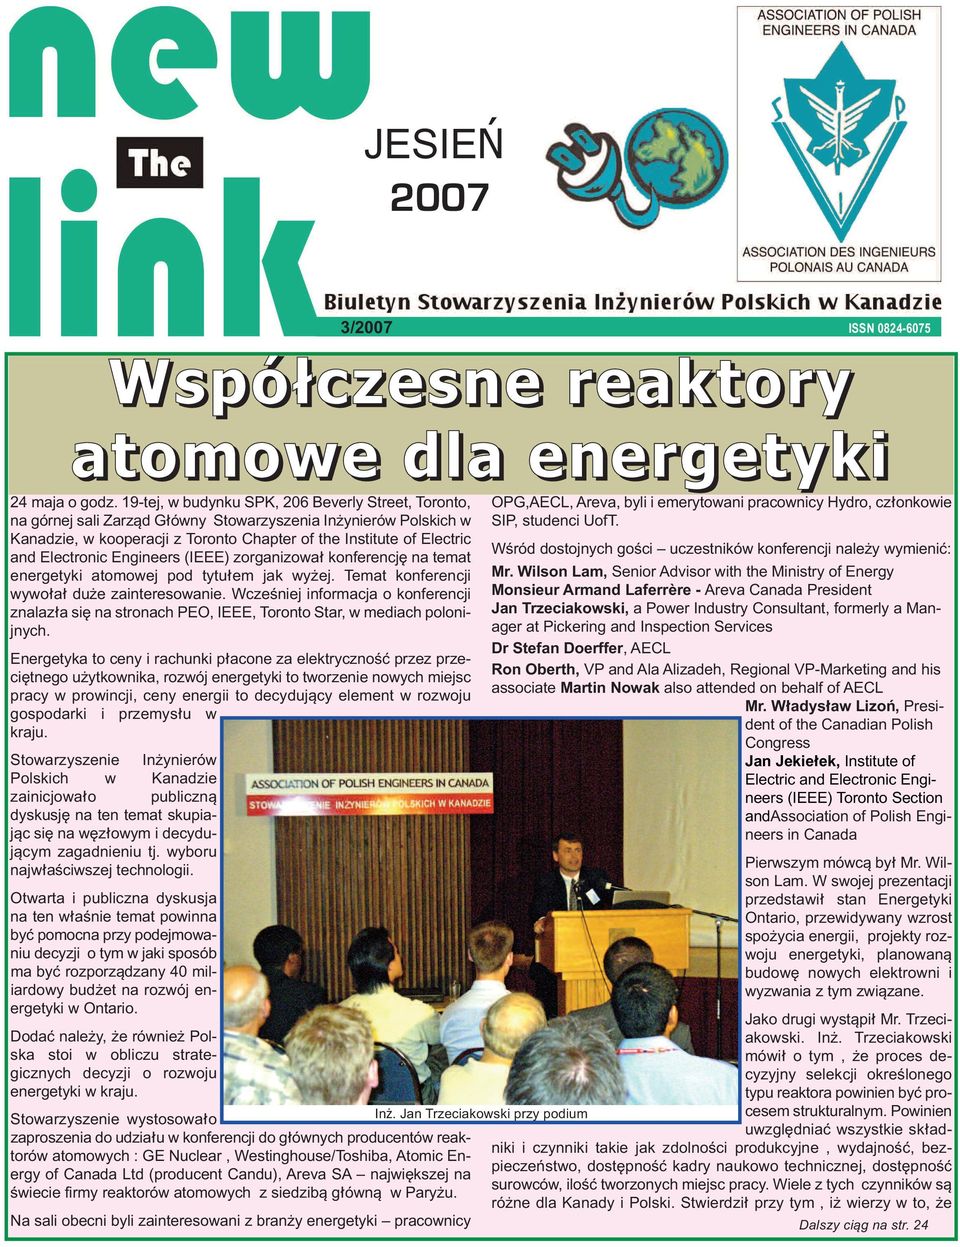 Electronic Engineers (IEEE) zorganizował konferencję na temat energetyki atomowej pod tytułem jak wyżej. Temat konferencji wywołał duże zainteresowanie.